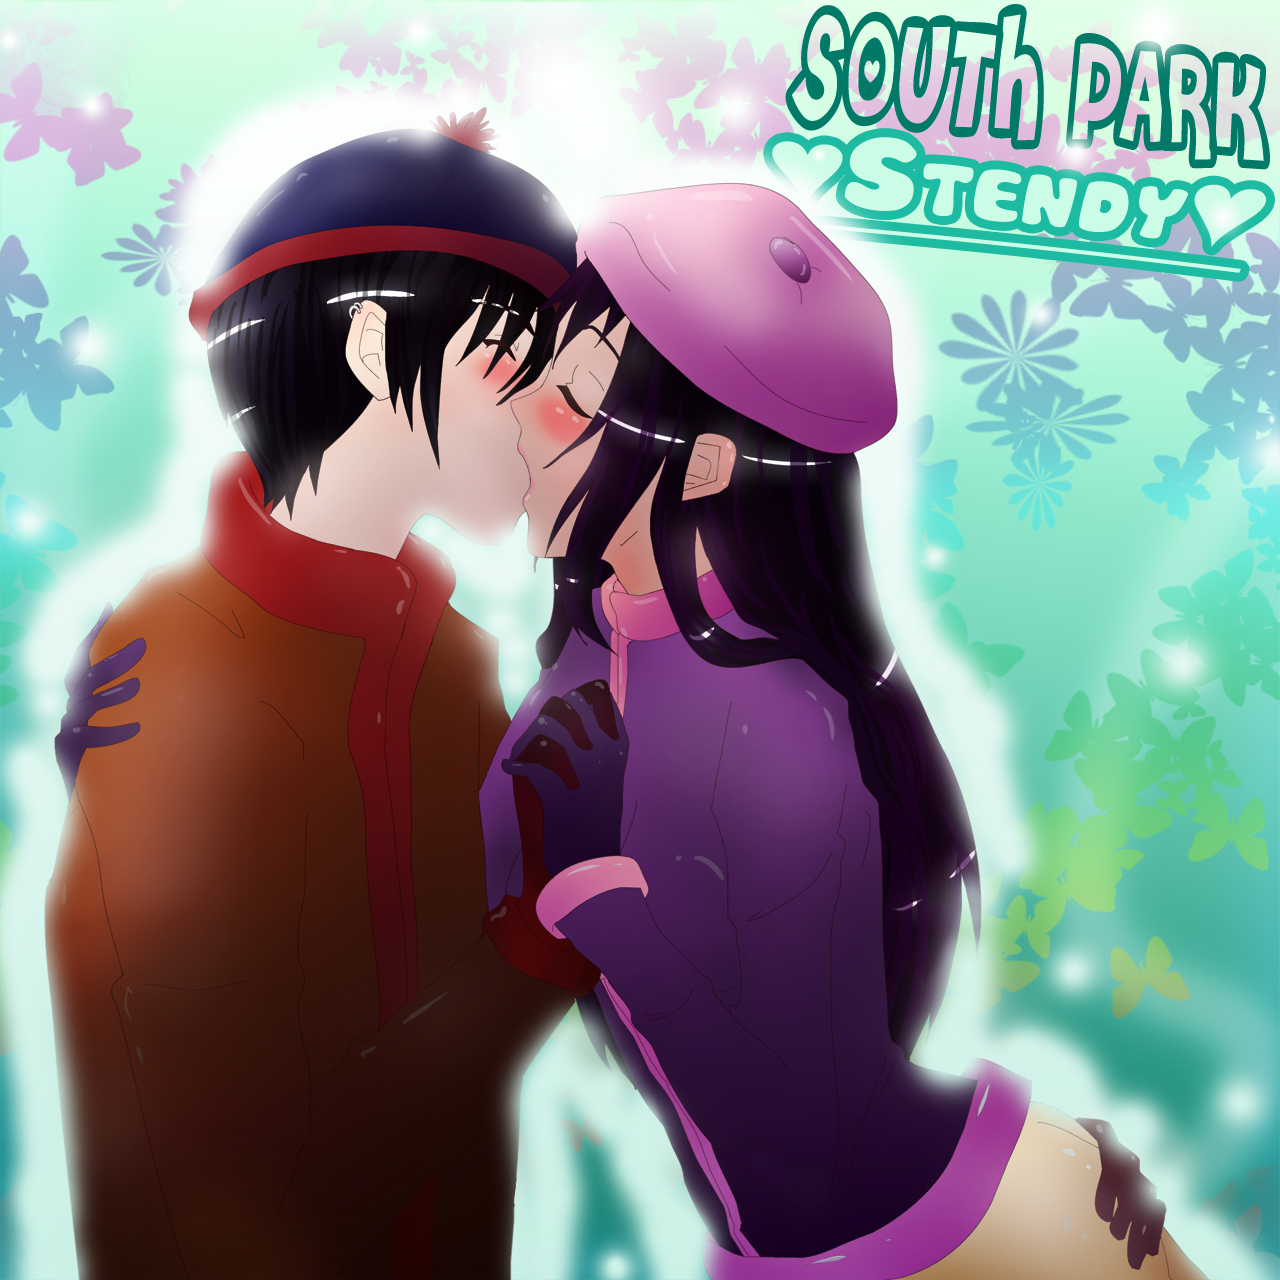 Kiss Anime South Park